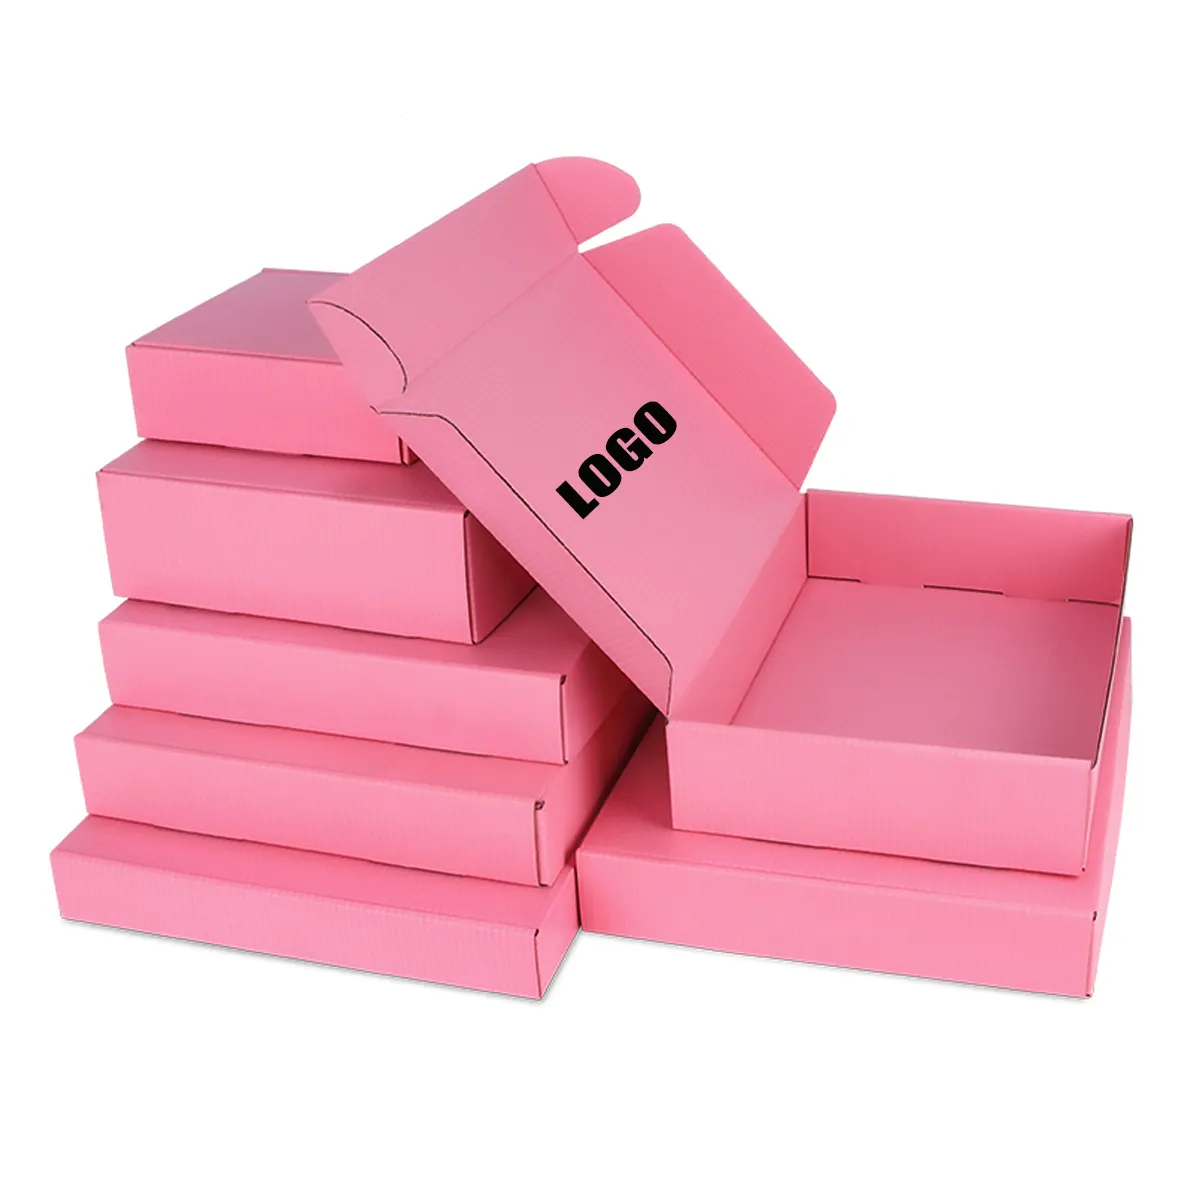 印刷ロゴ付きの小さなピンクの配送ボックスを梱包するためのカスタムボックス包装マイルカートンペーパーボックス